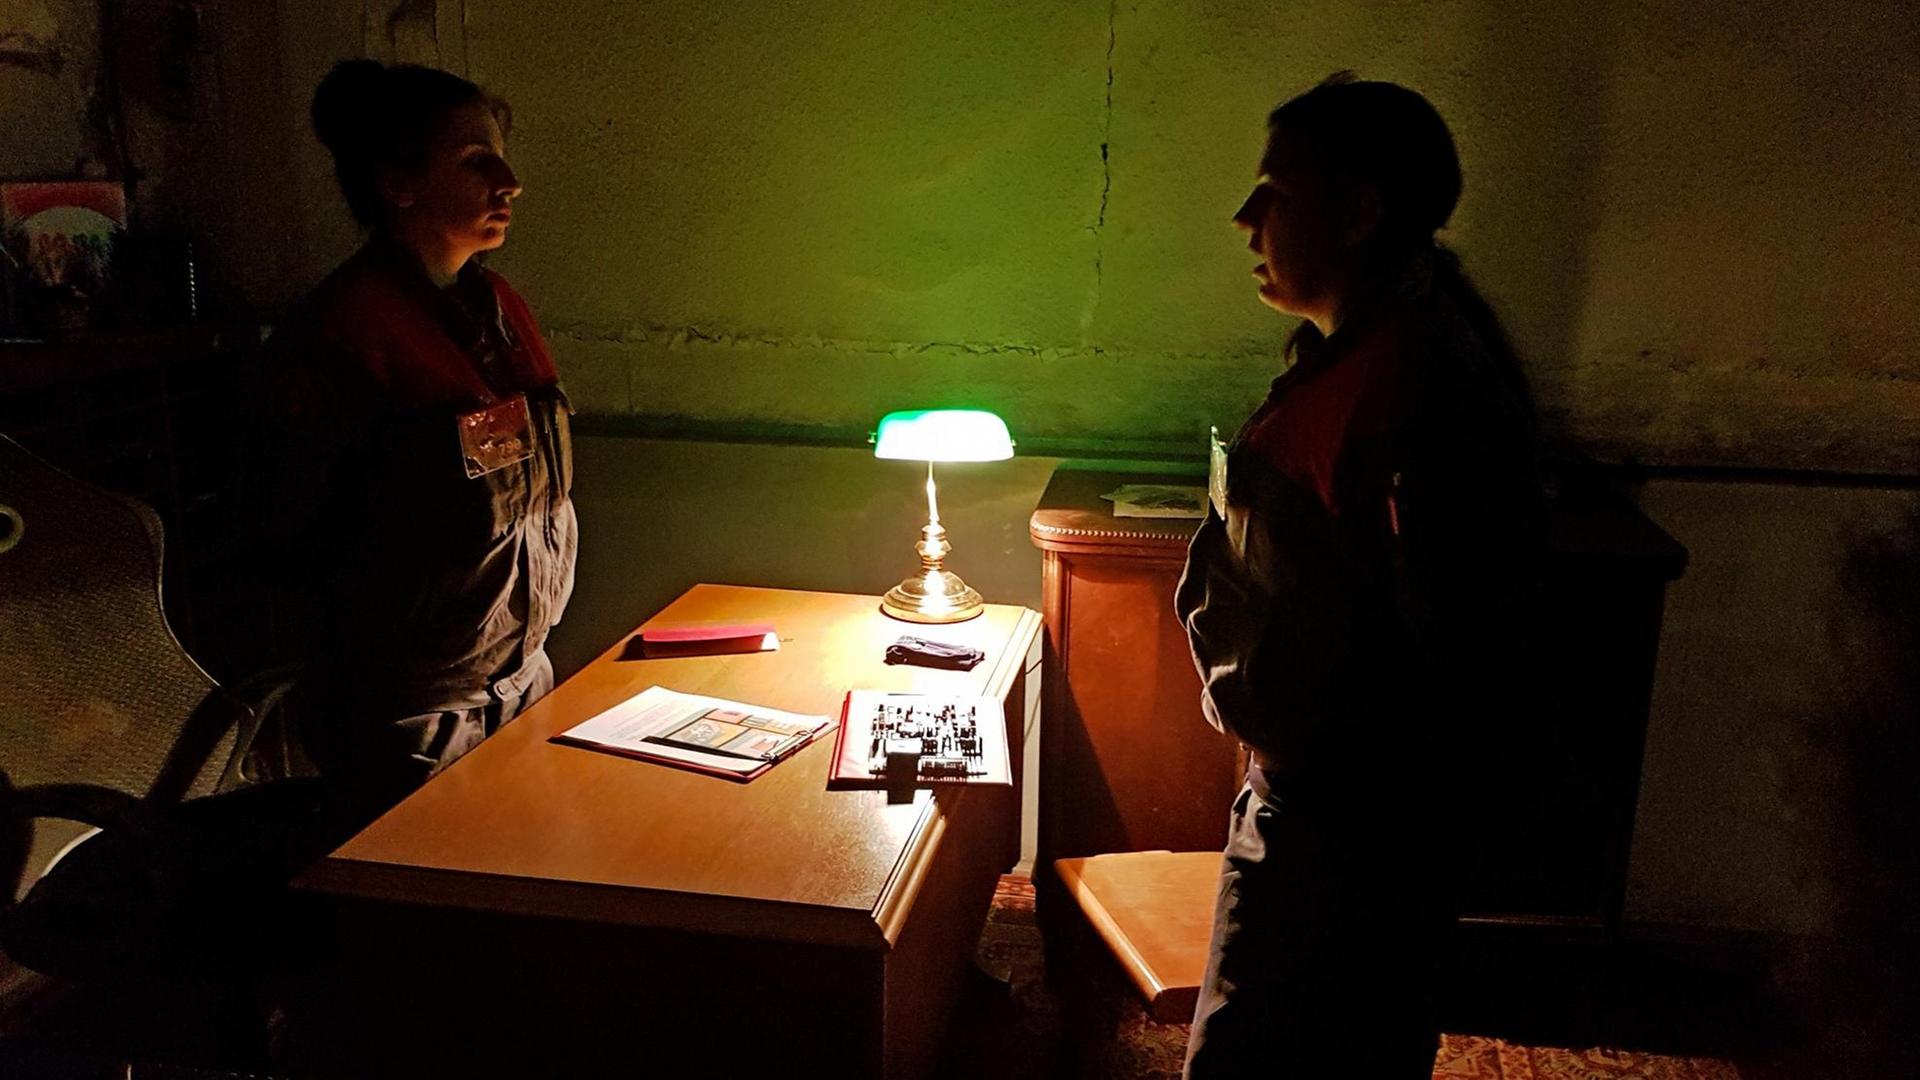 Szene aus dem Rollenspiel "Inside": In einem dunklem Büro stehen sich zwei Frauen in Uniformen gegenüber, zwischen ihnen ein Schreibtisch.